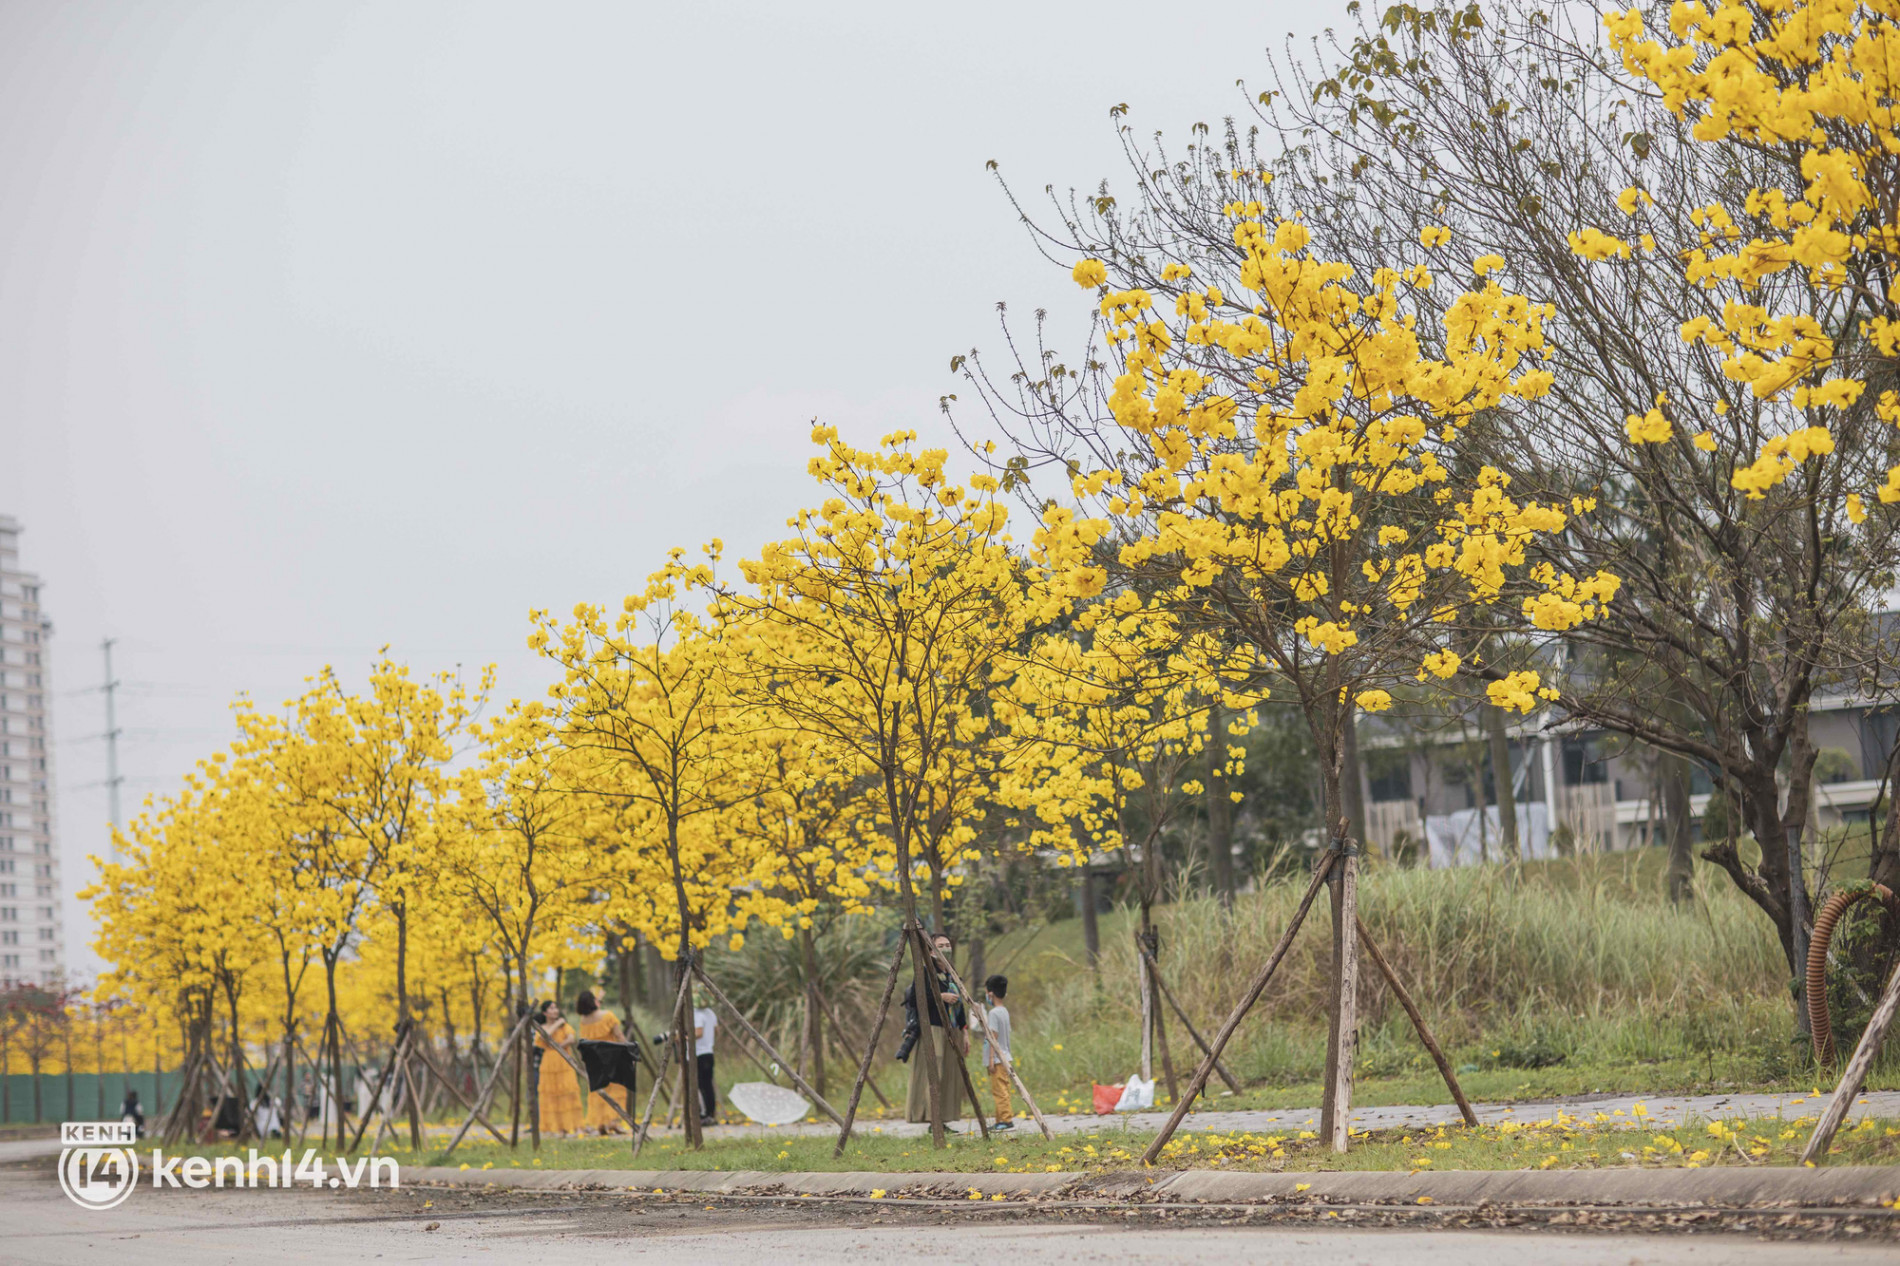 Con đường hoa vàng ở Hà Nội mới nổi 2 ngày đã đông nghịt người kéo đến check-in, có cả ekip “sống ảo” hùng hậu - Ảnh 10.